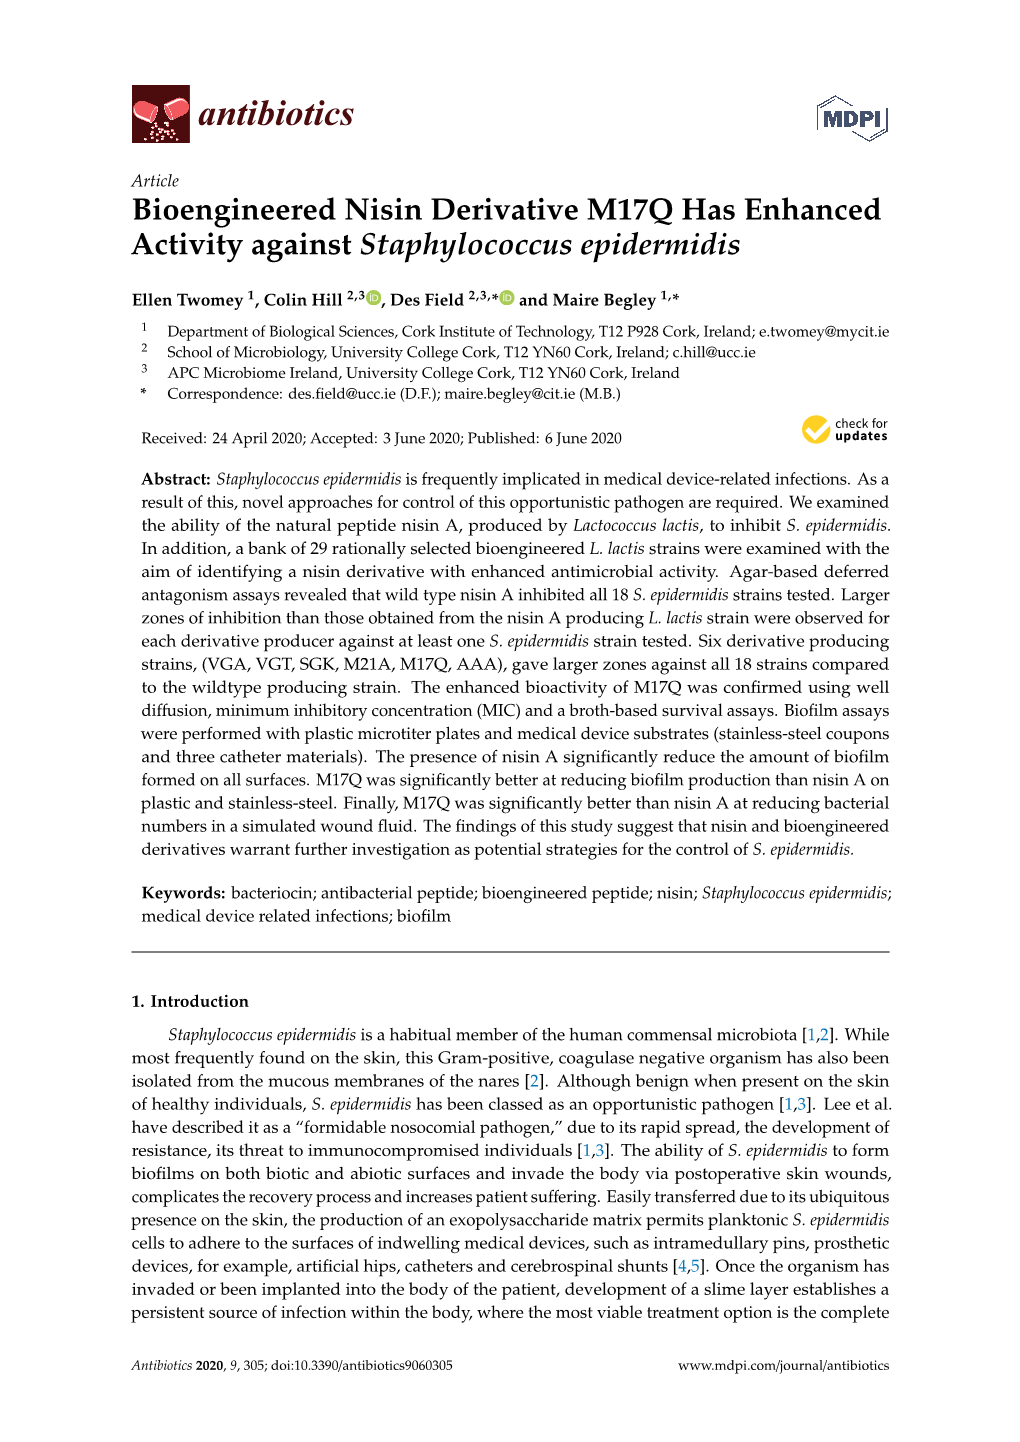 Bioengineered Nisin Derivative M17Q Has Enhanced Activity Against Staphylococcus Epidermidis